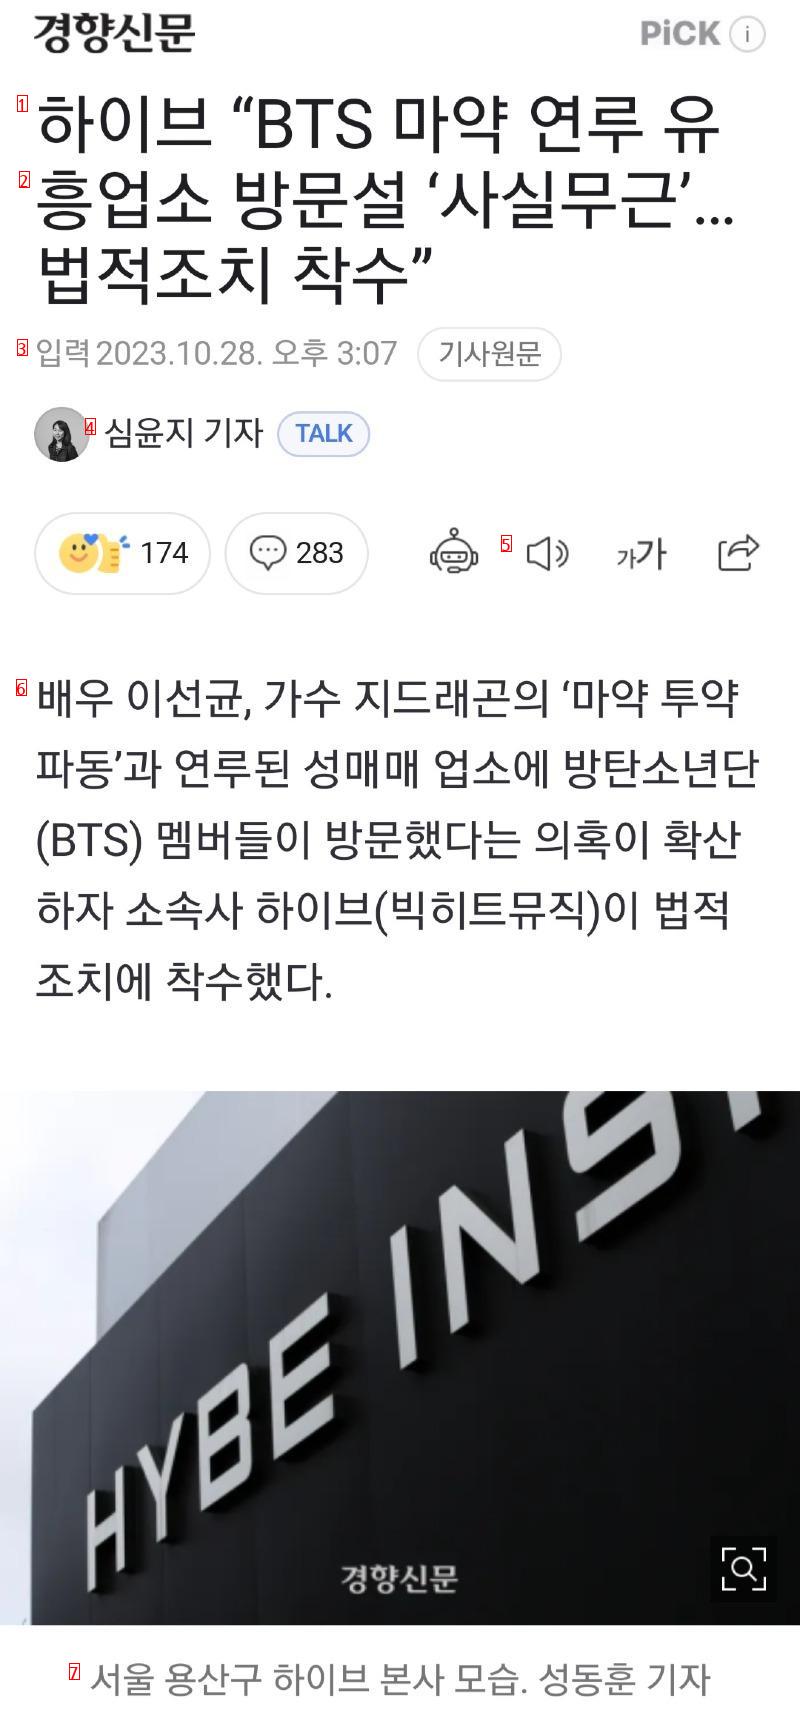 BTS 허위 사실, 명예 훼손...강경 대응 예고